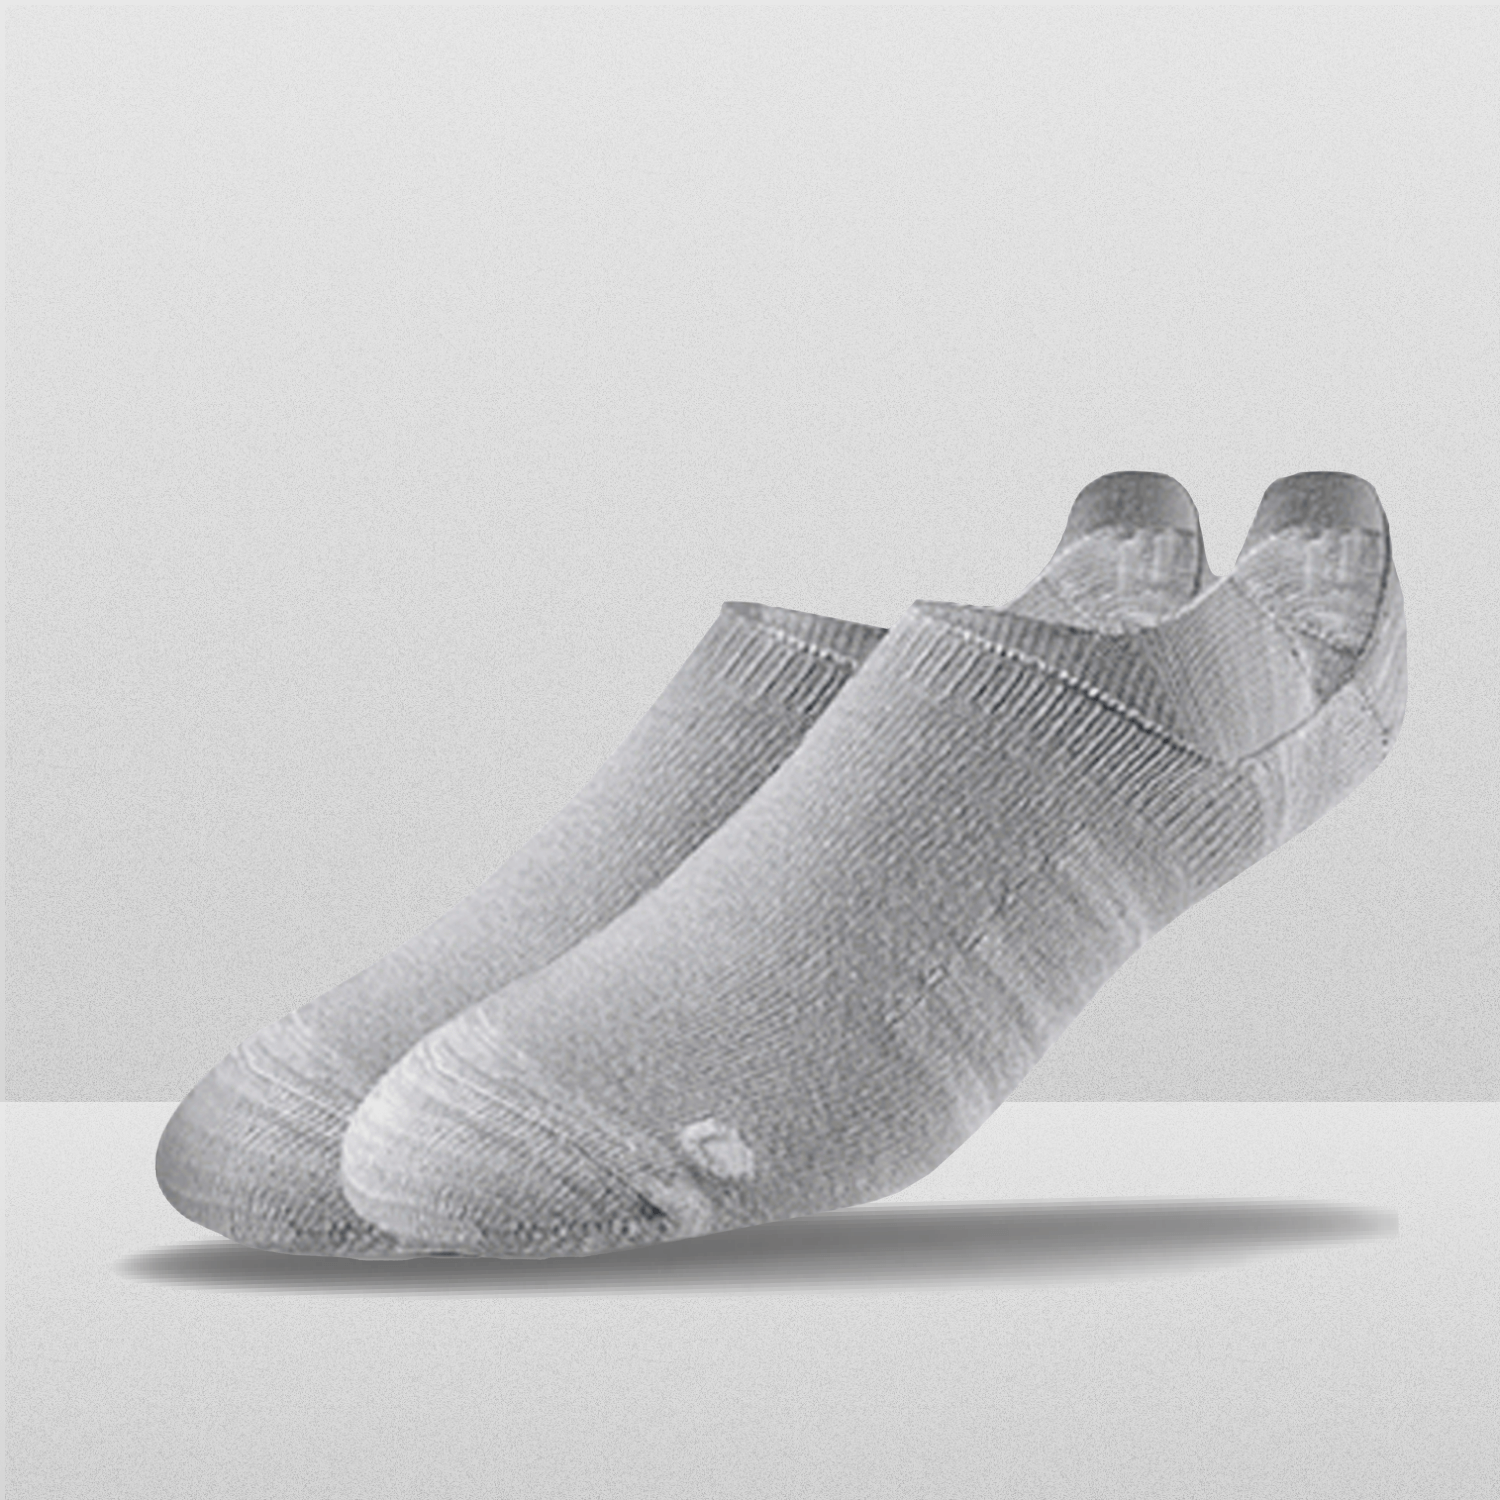 Unisex Throwback Sock - Black/White